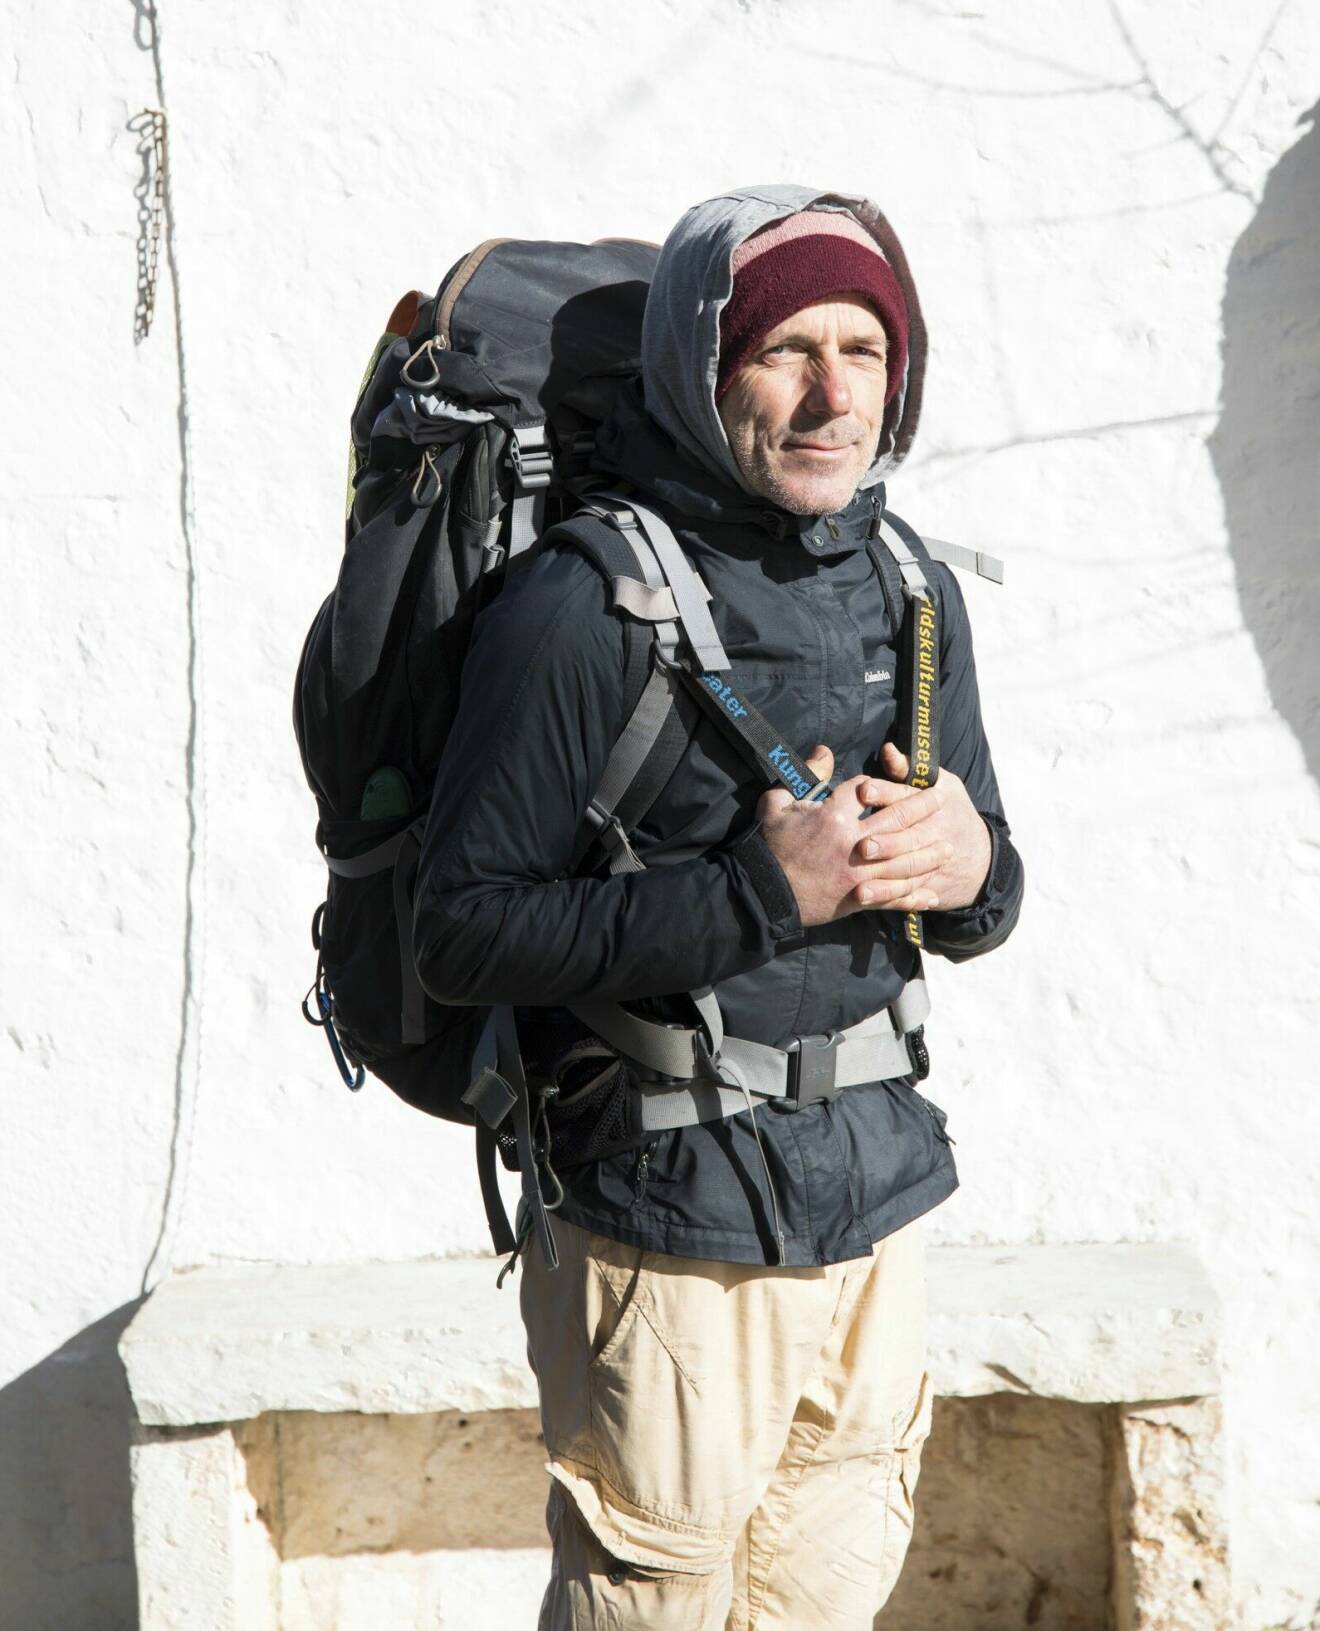 Carlo Magnani från Italien i full vandrings-mundering med stor ryggsäck på ryggen.